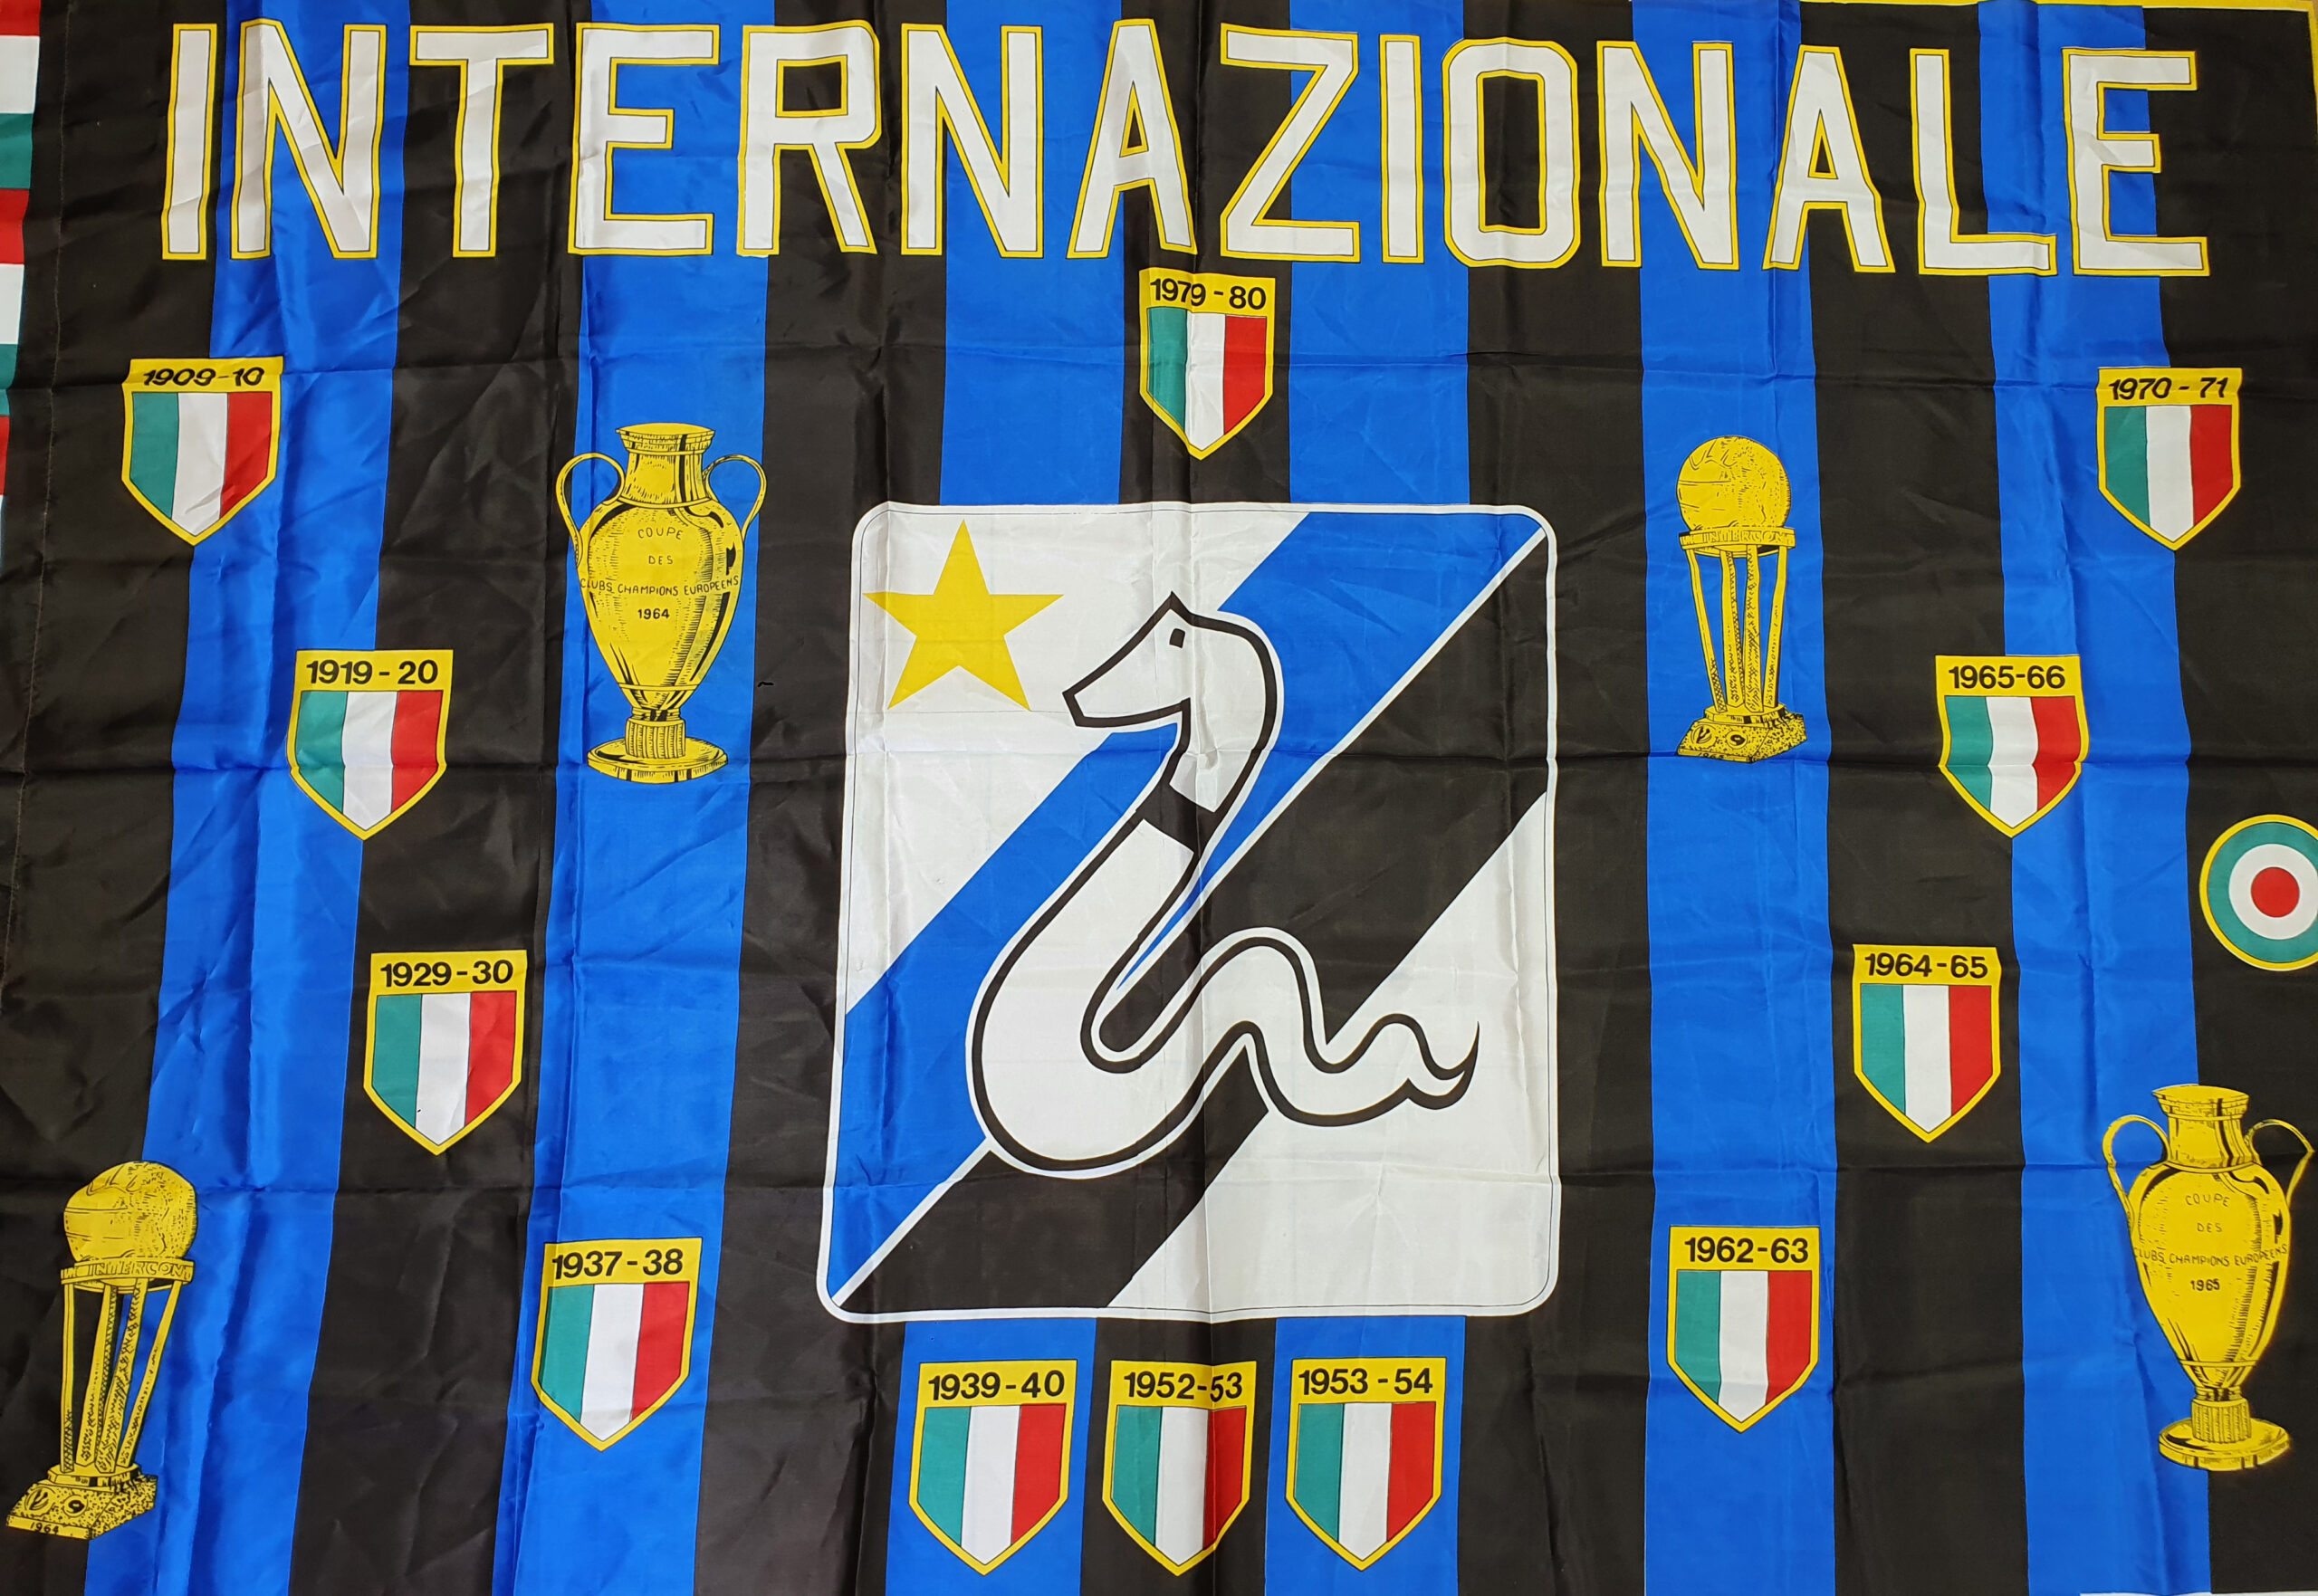 Inter 1979-80 bandiera vintage